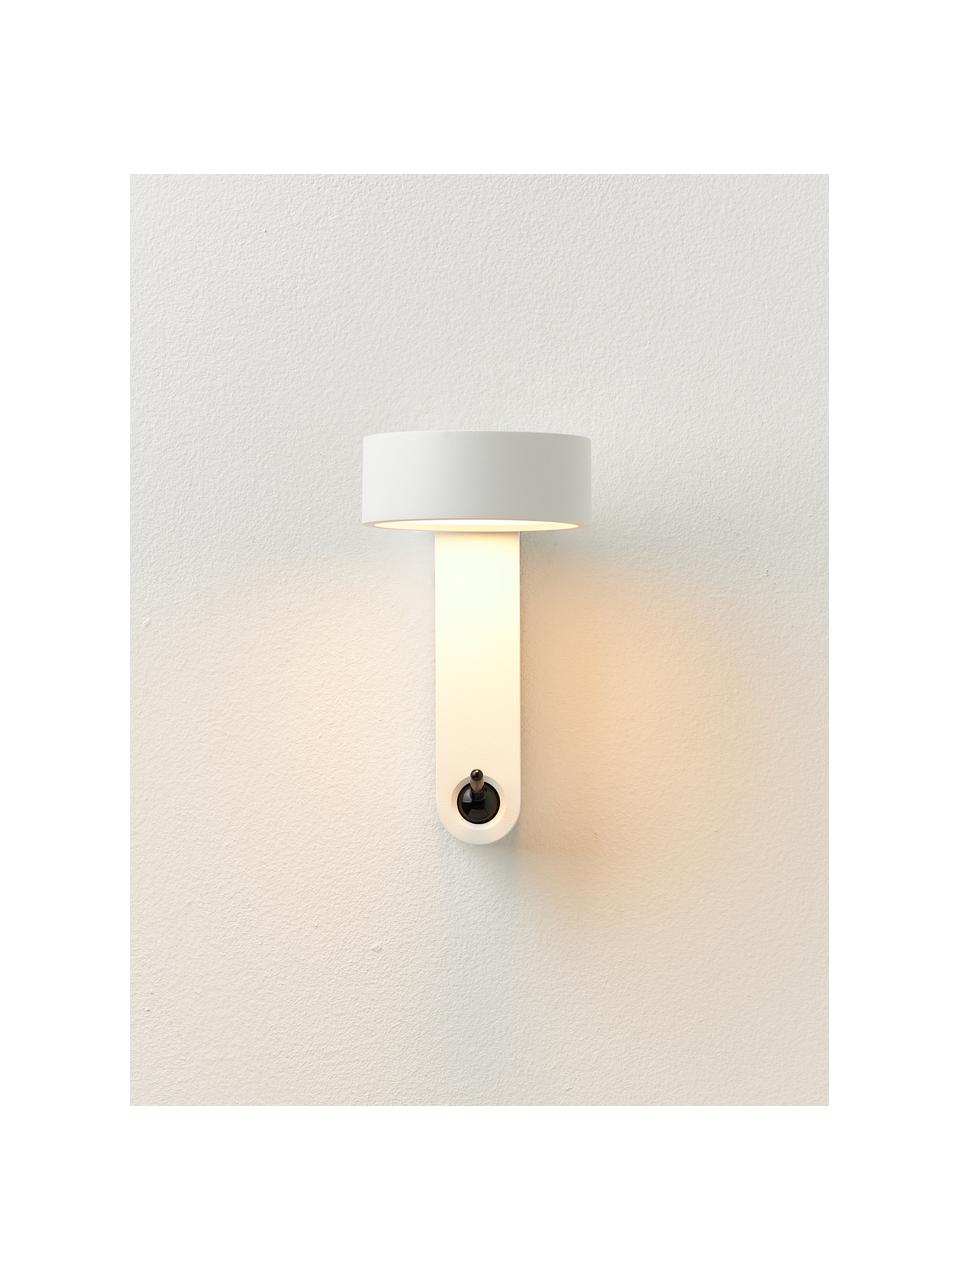 Kleine LED-Wandleuchte Toggle mit verstellbarem Lampenschirm, Aluminium, lackiert, Weiß, matt, B 10 x H 17 cm